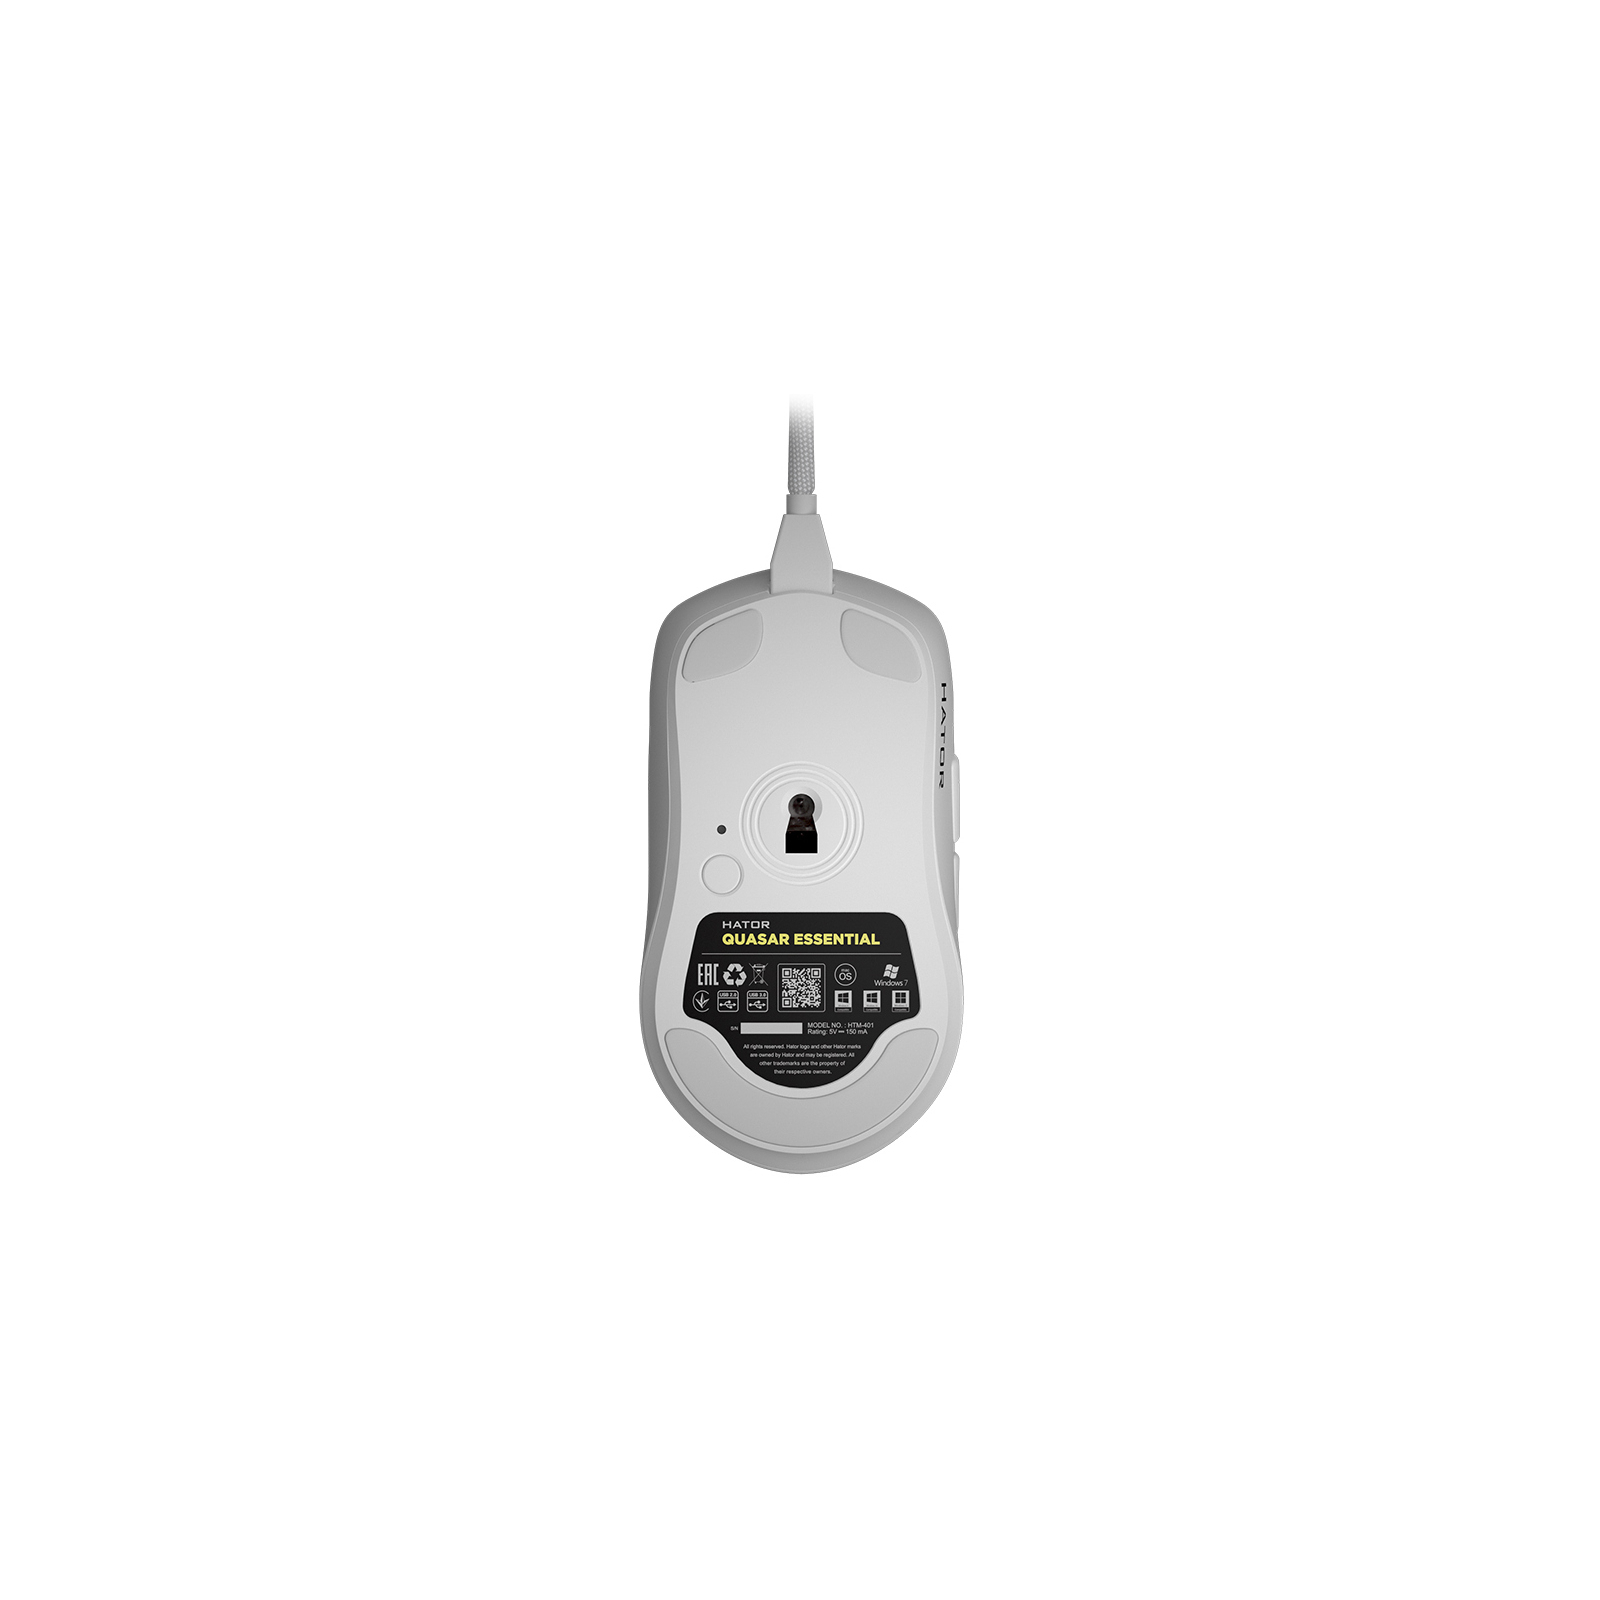 Мышка Hator Quasar Essential USB White (HTM-401) изображение 6